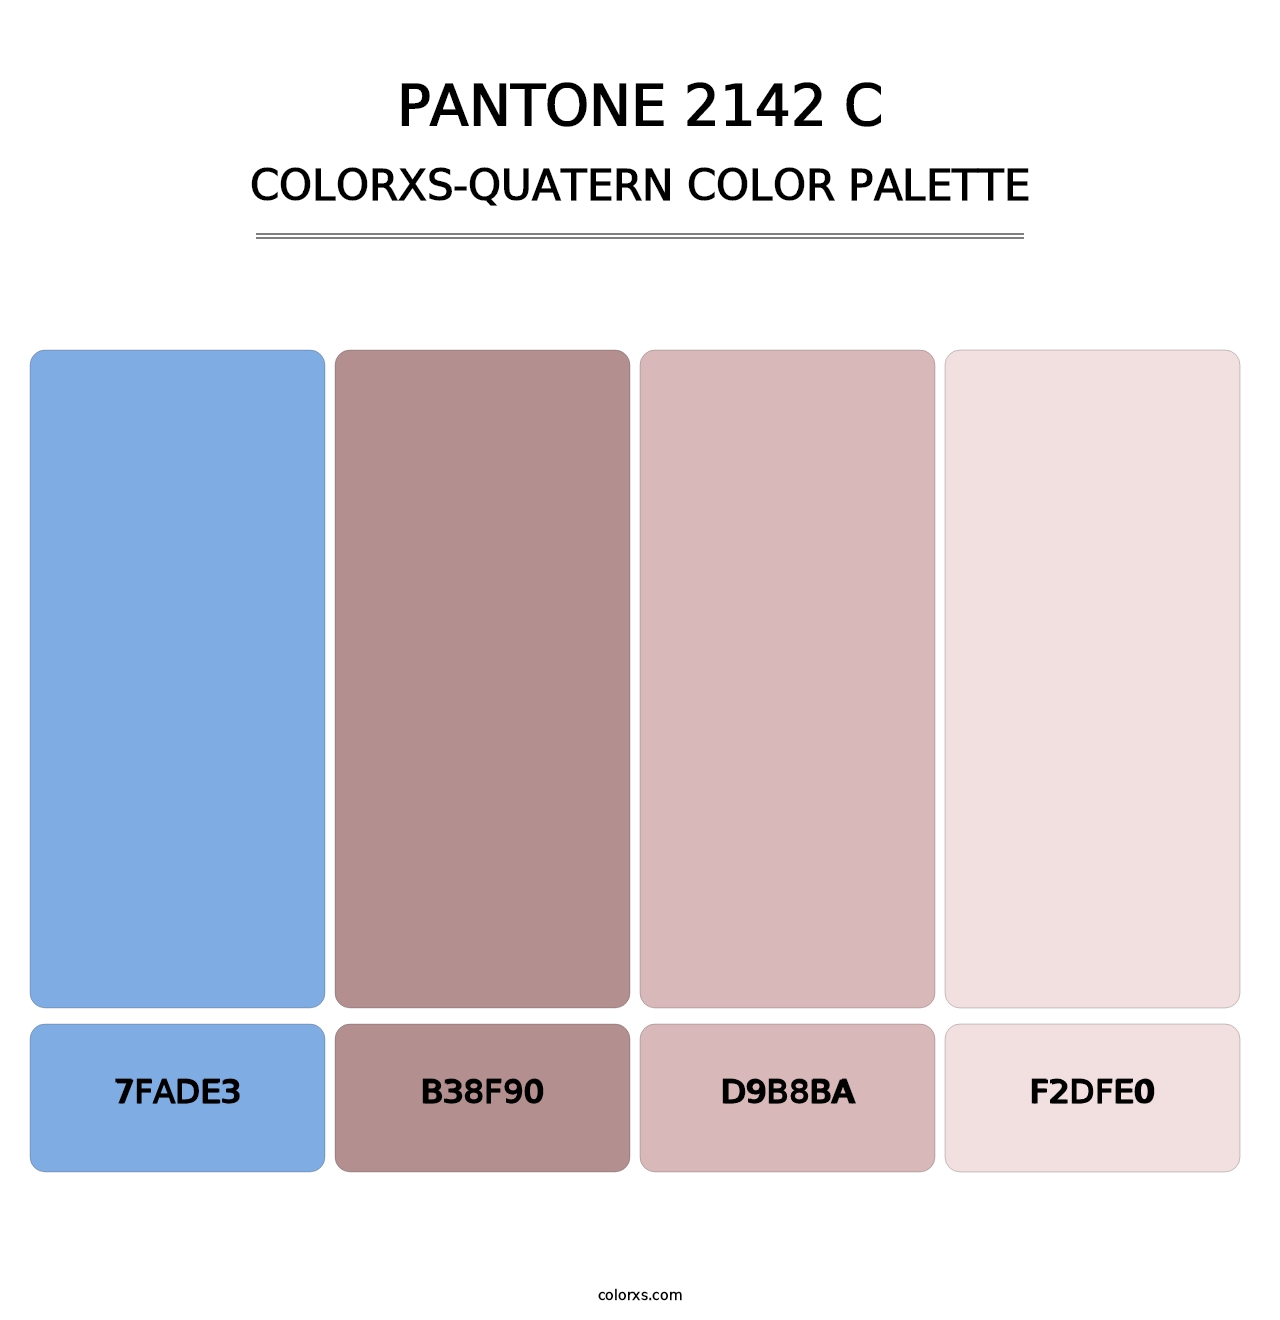 PANTONE 2142 C - Colorxs Quatern Palette